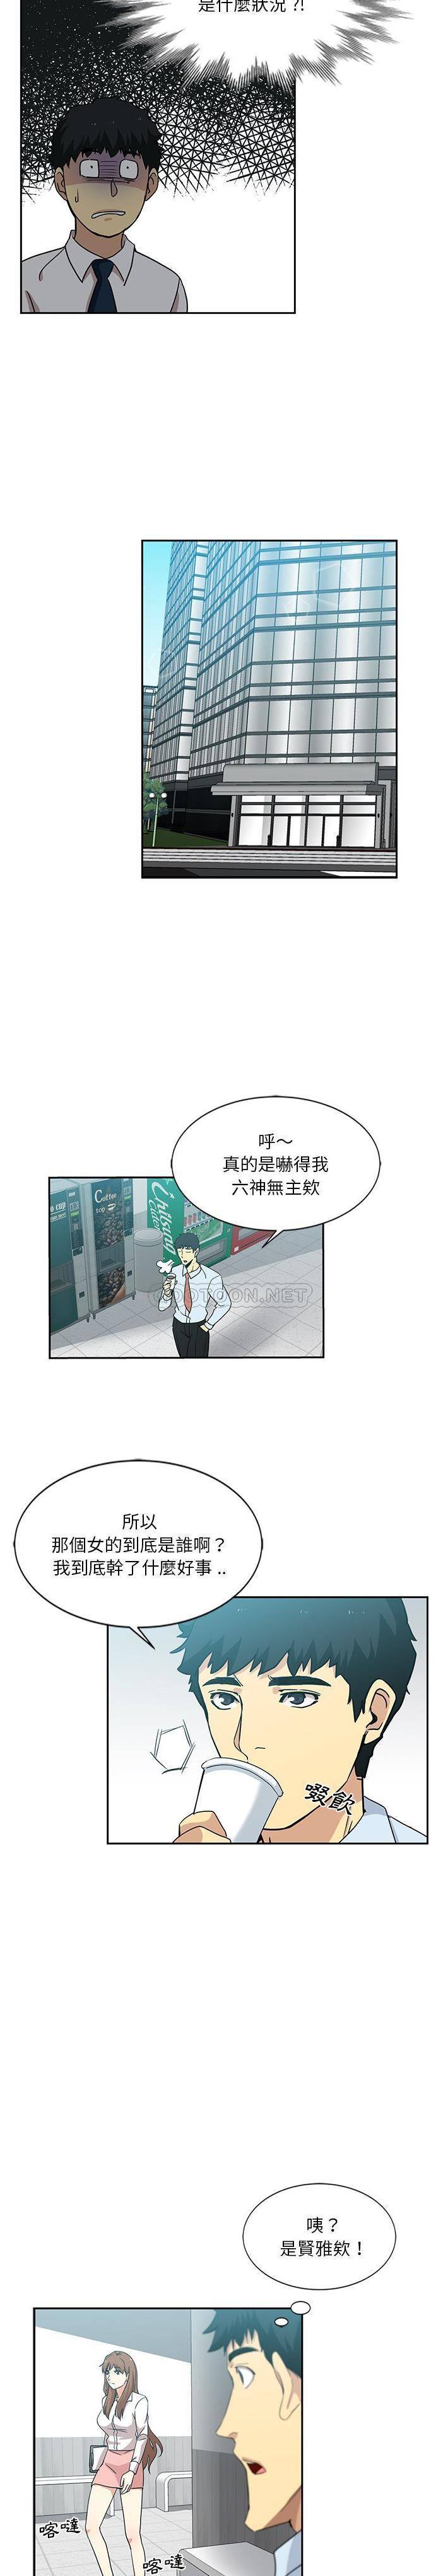 韩国污漫画 危險純友誼 第6话 13